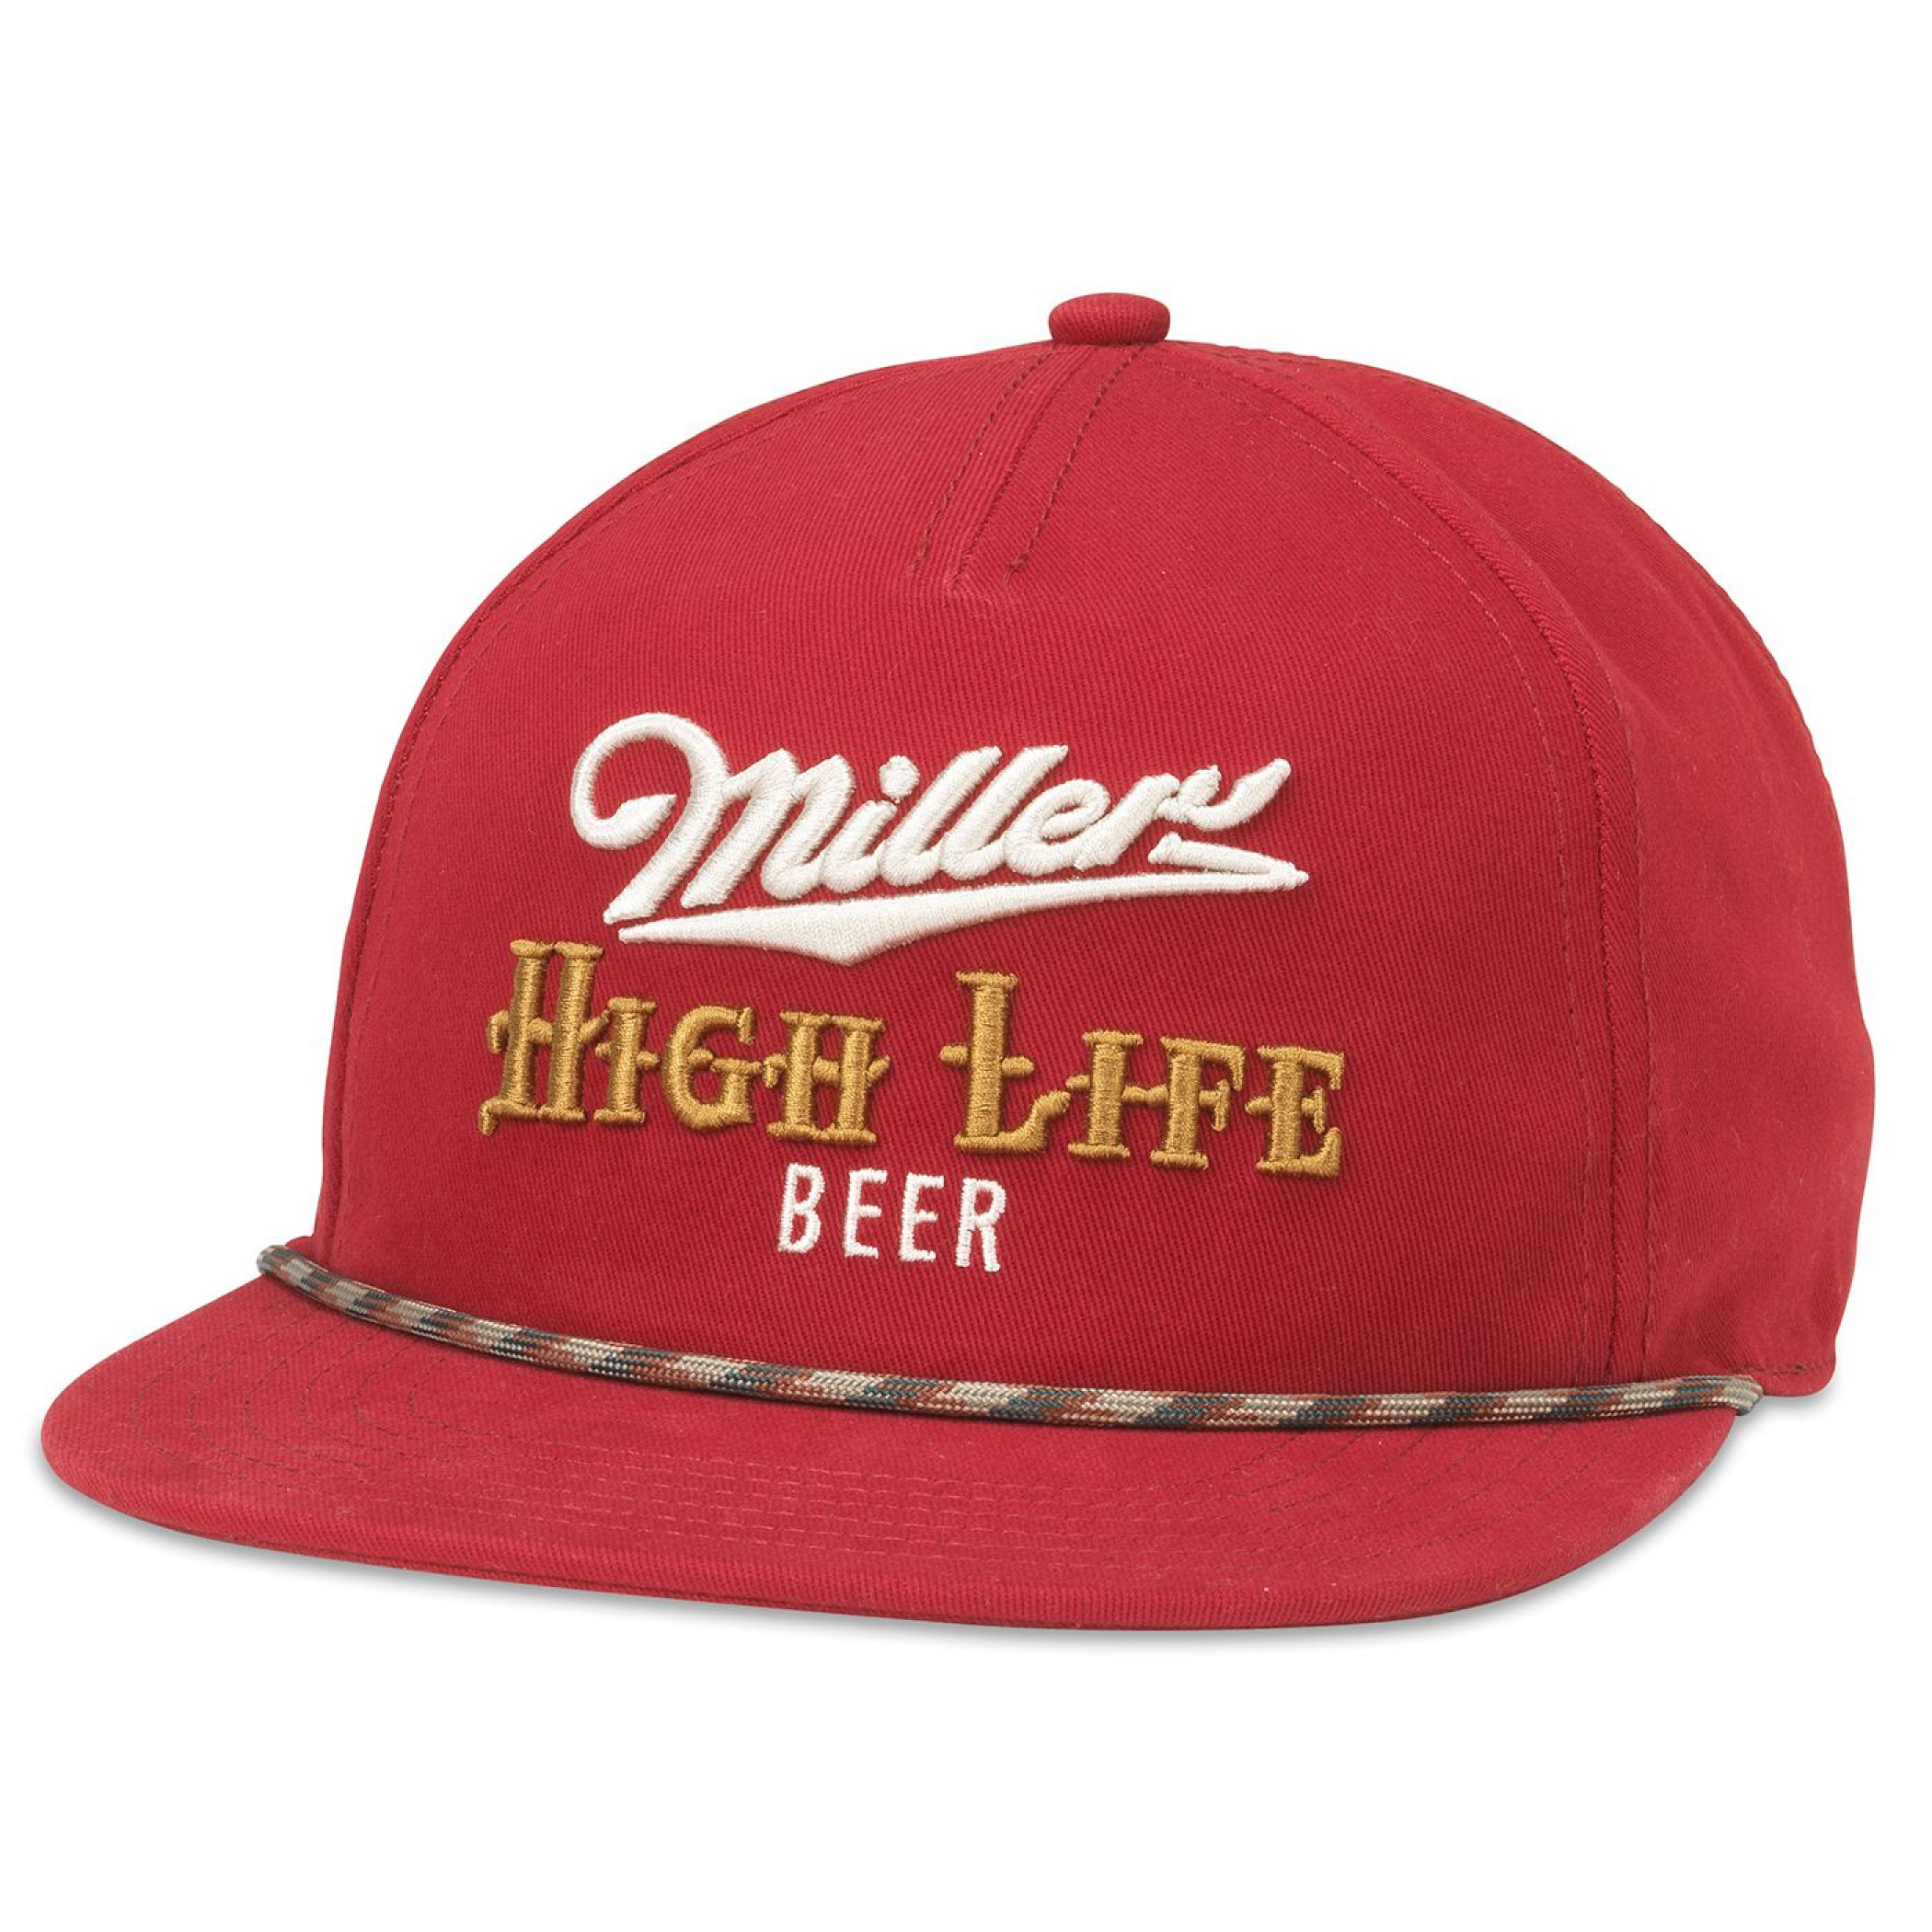 Miller High Life Logo Embroidered Adjustable Patterned Rope Hat